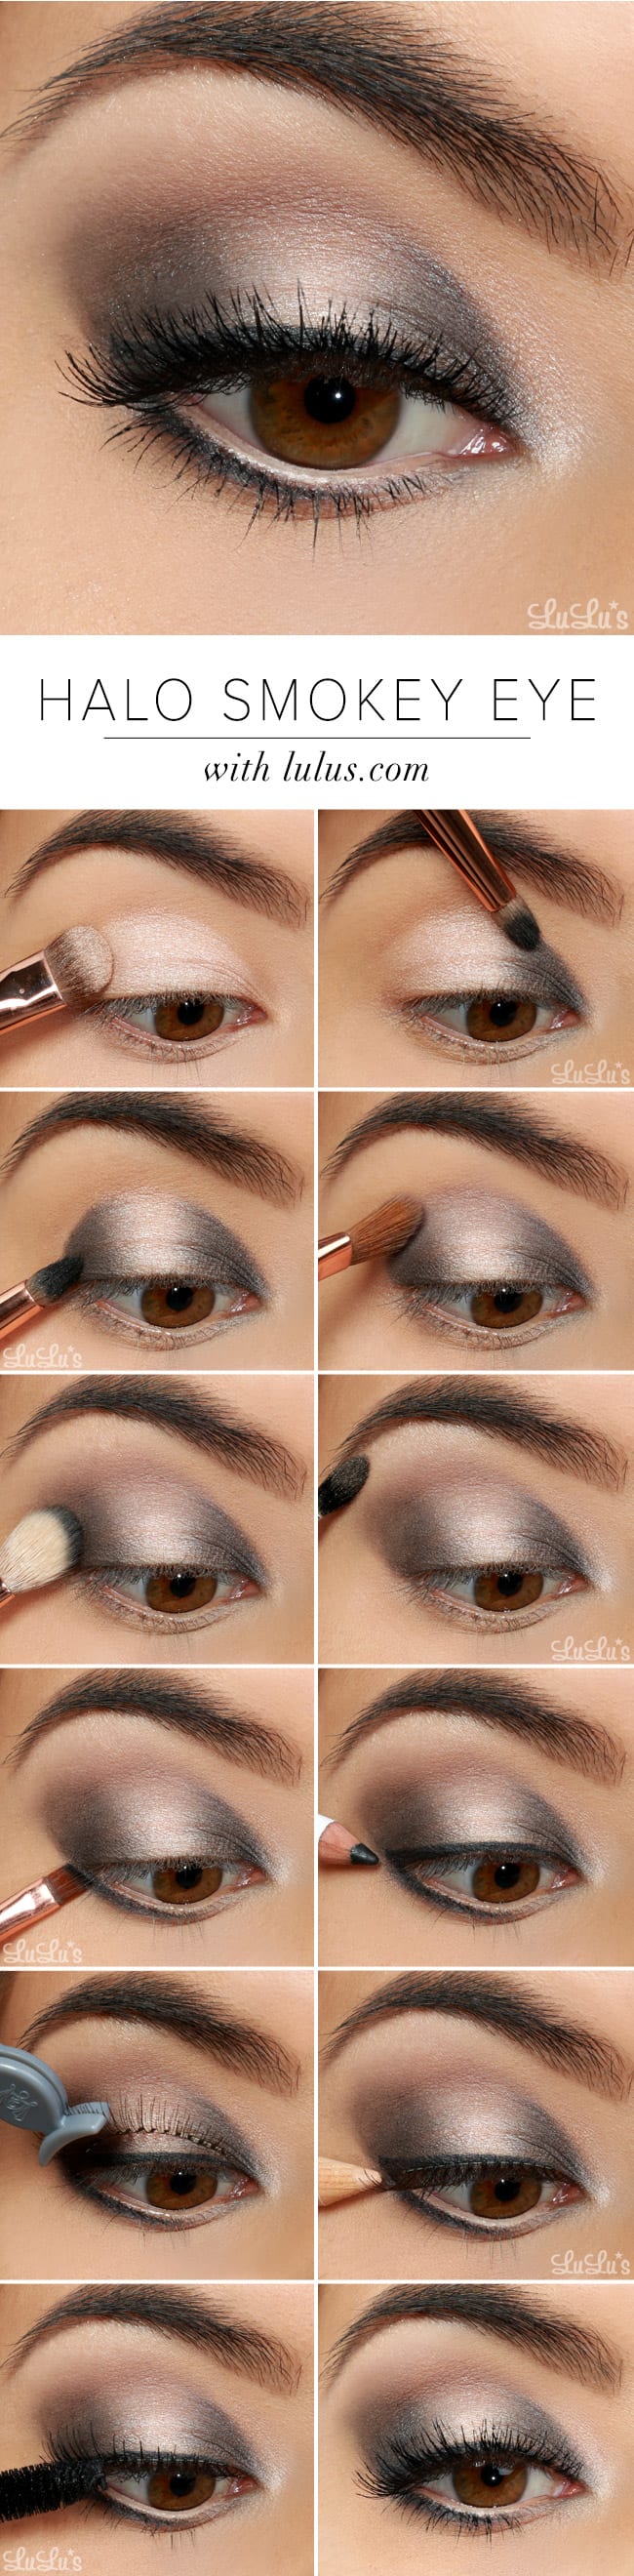 smokey eye makeup steps